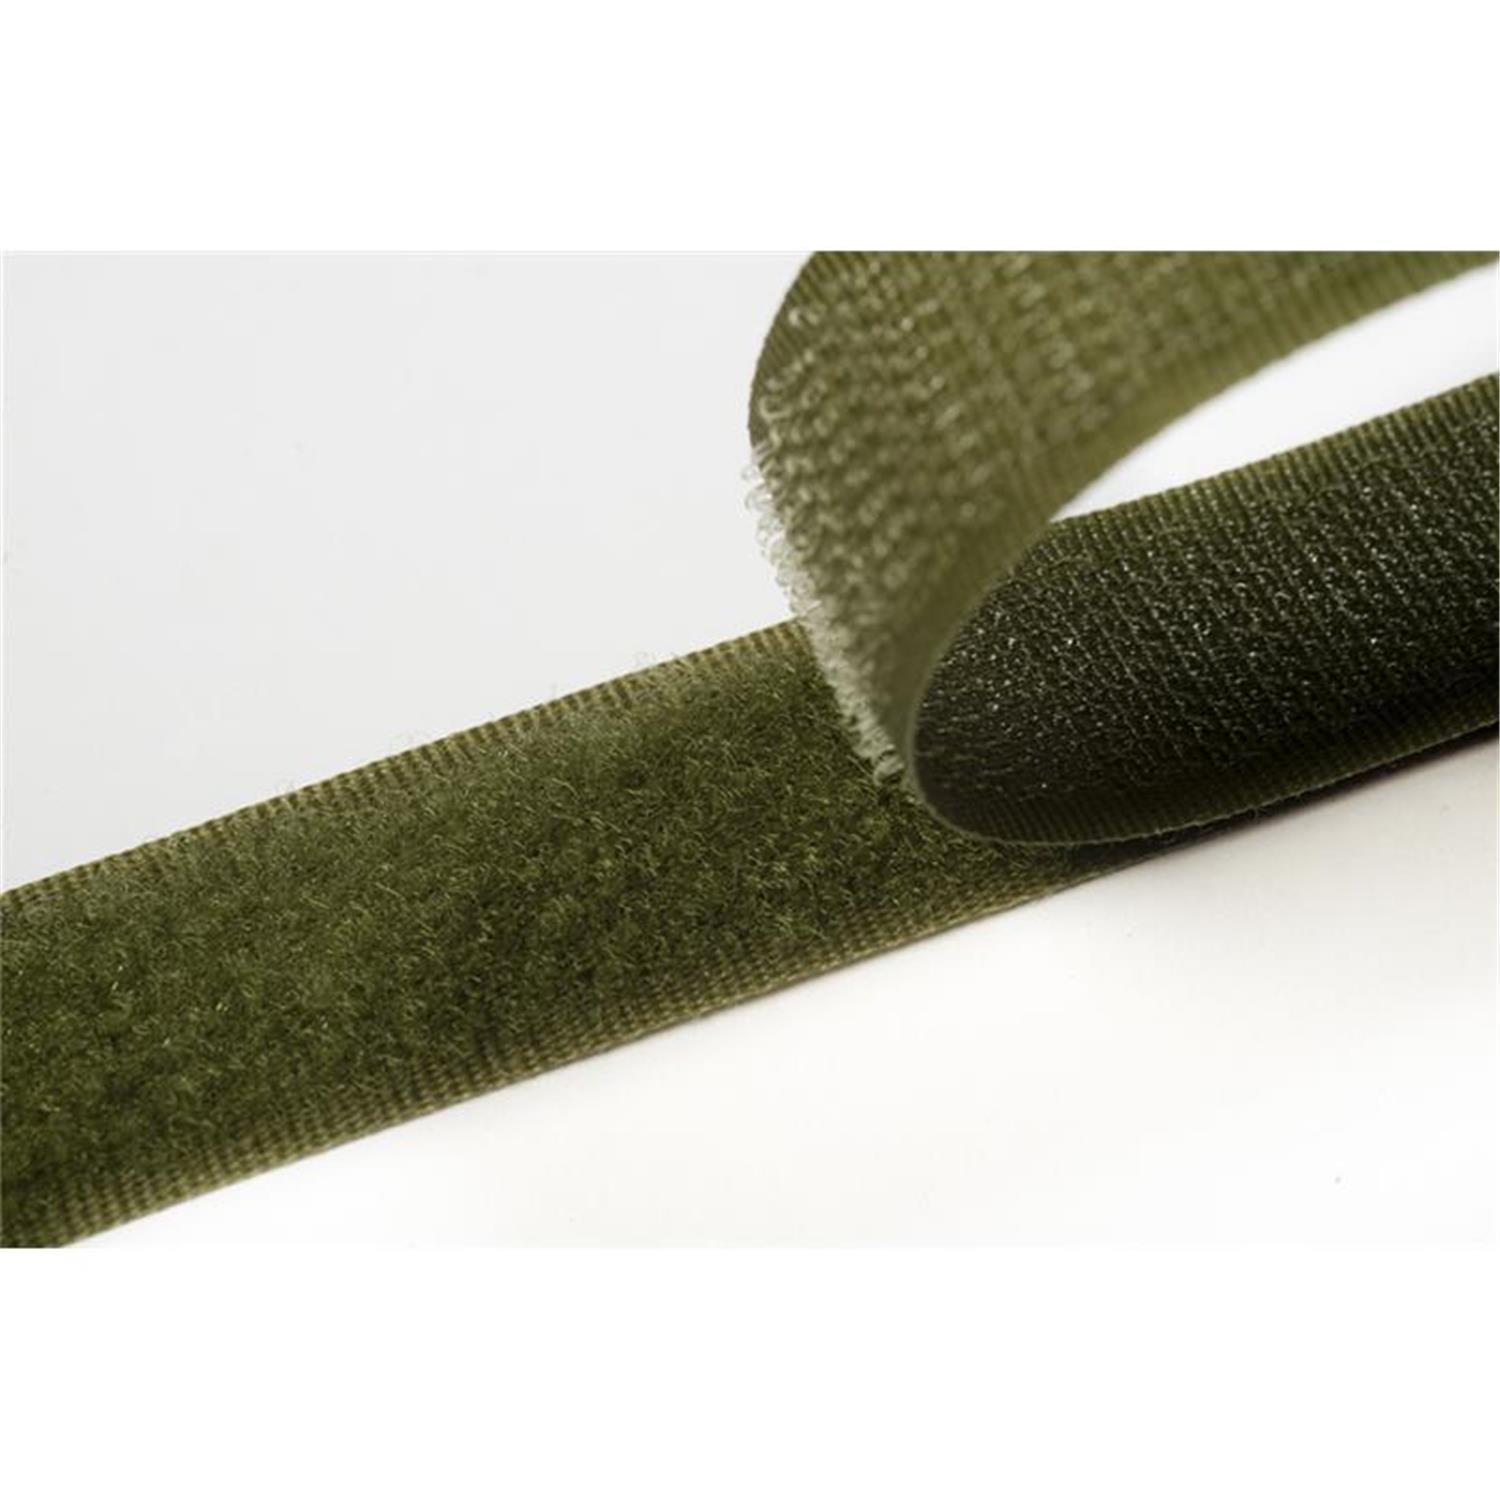 Klettband zum aufnähen, 38 mm, olivgrün #09 25 Meter